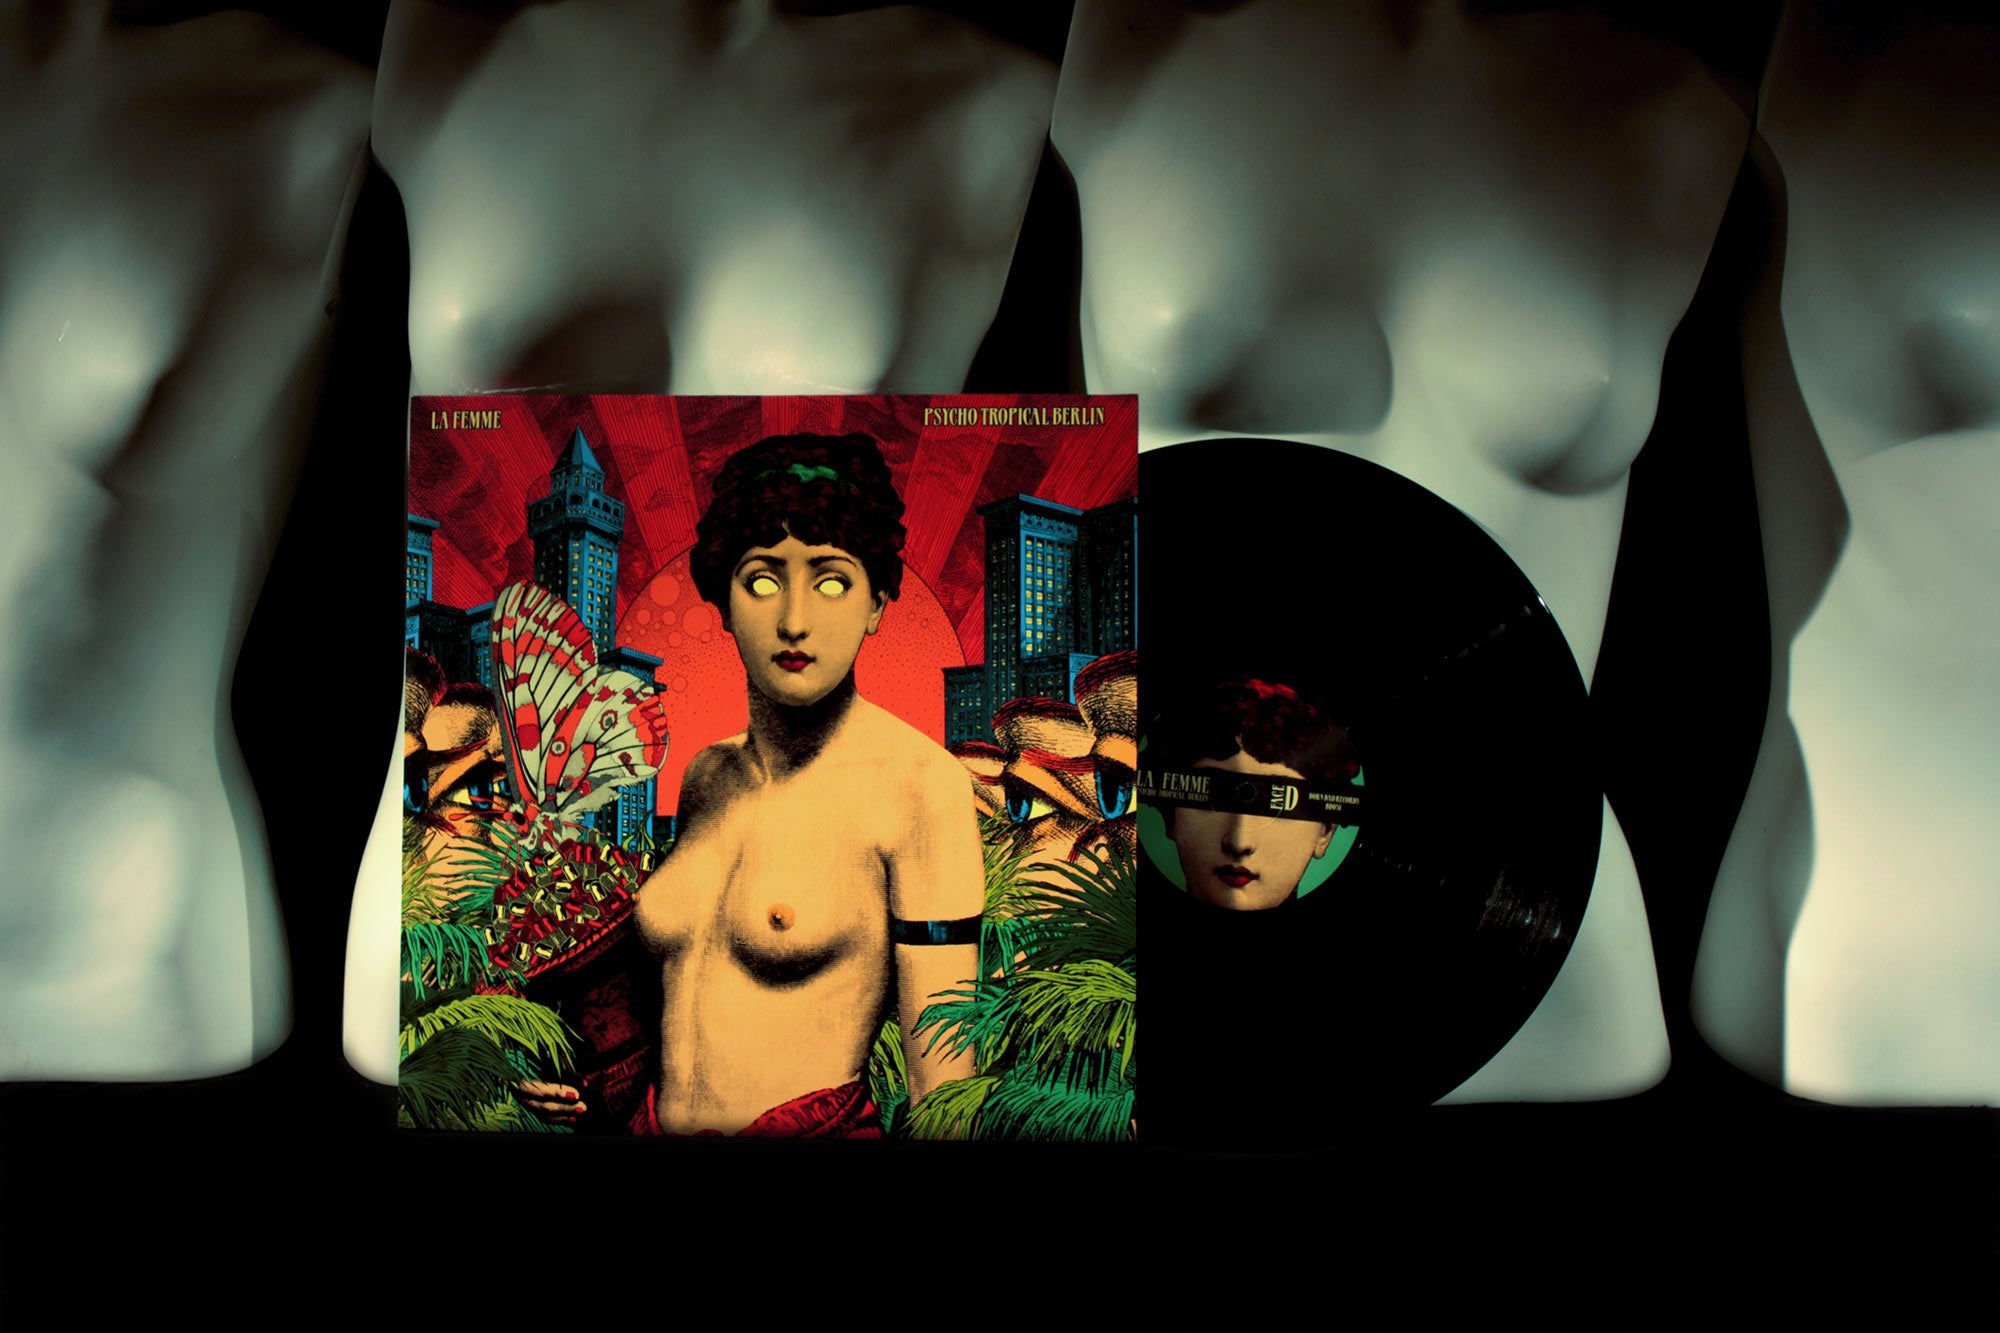 PYSCHO TROPICAL BERLIN - Vinyl / (Double LP)